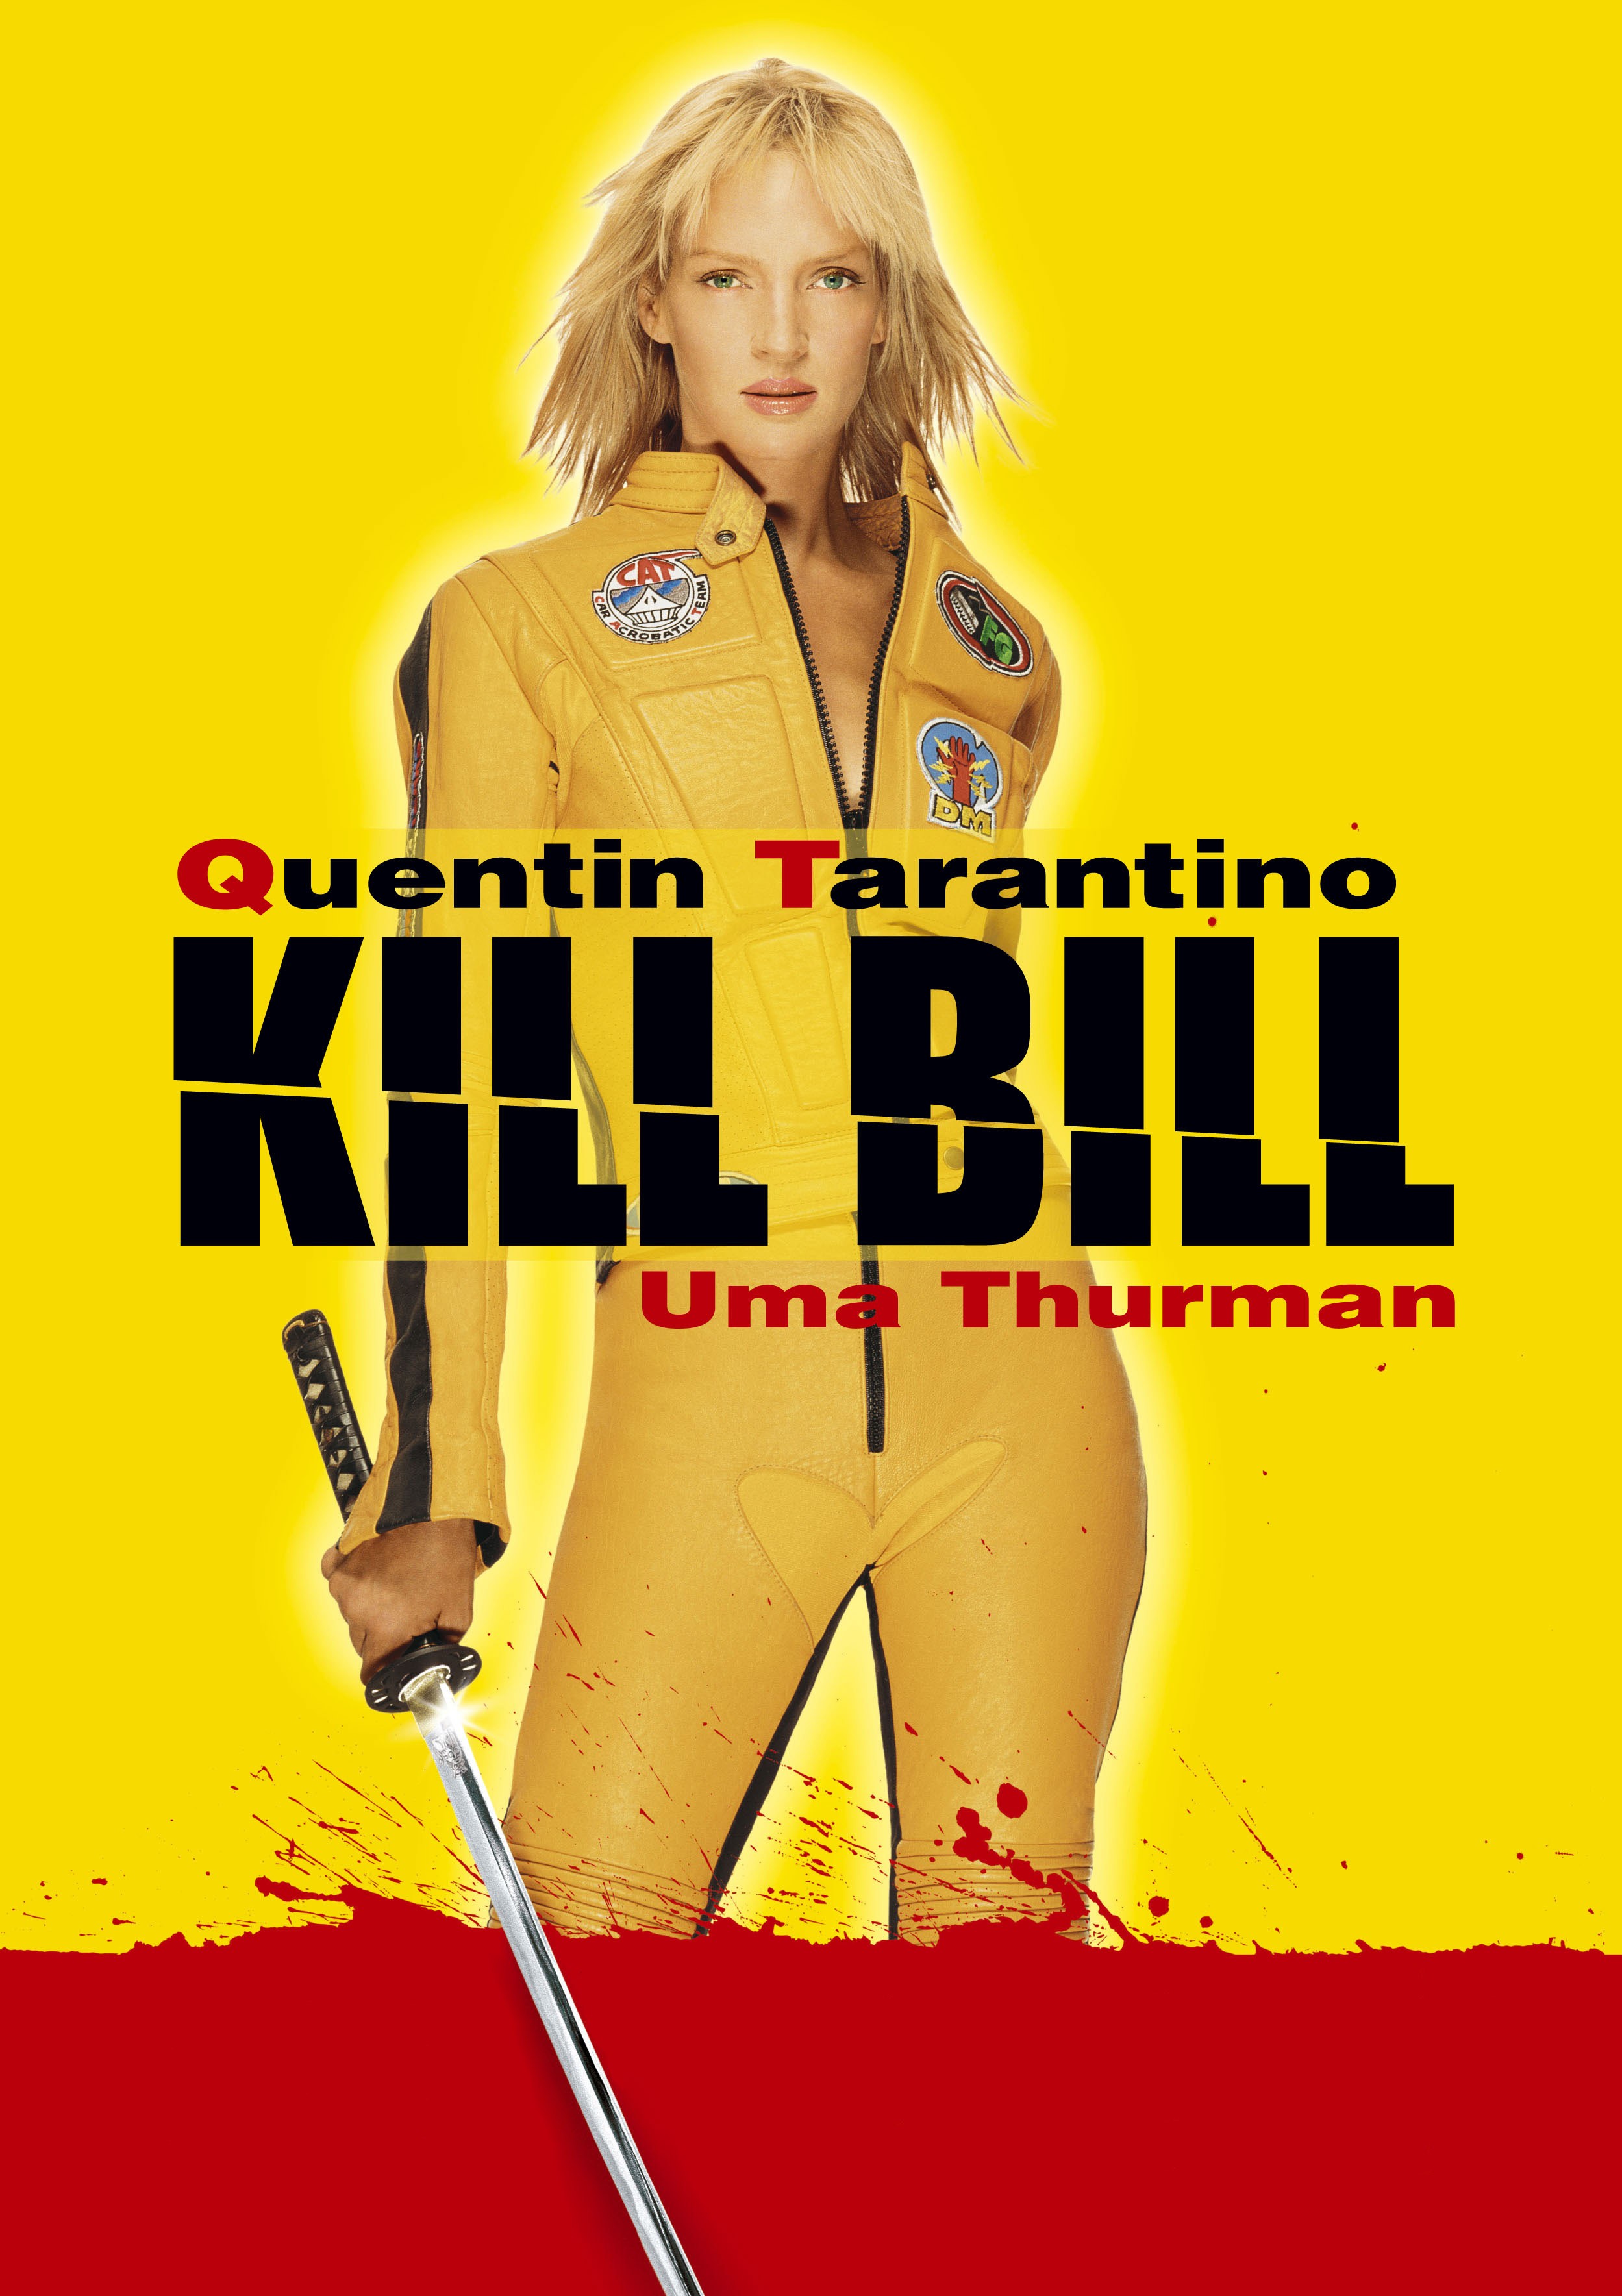 Images of Kill Bill | 2498x3537